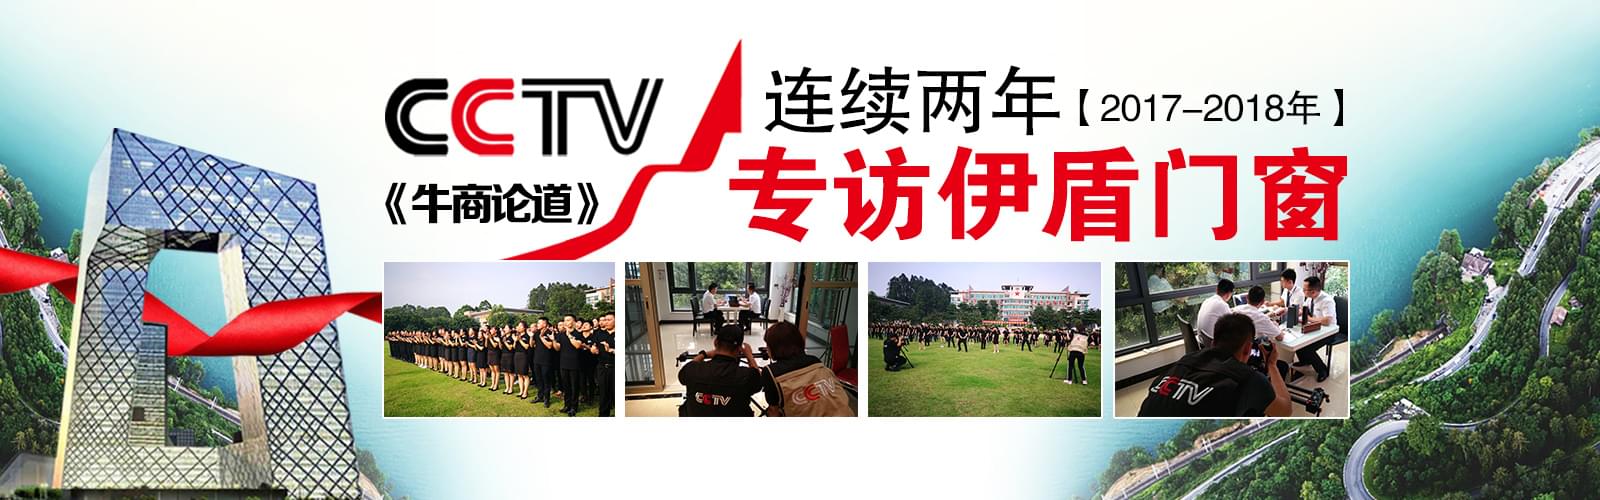 官网CCTV专访品牌海报